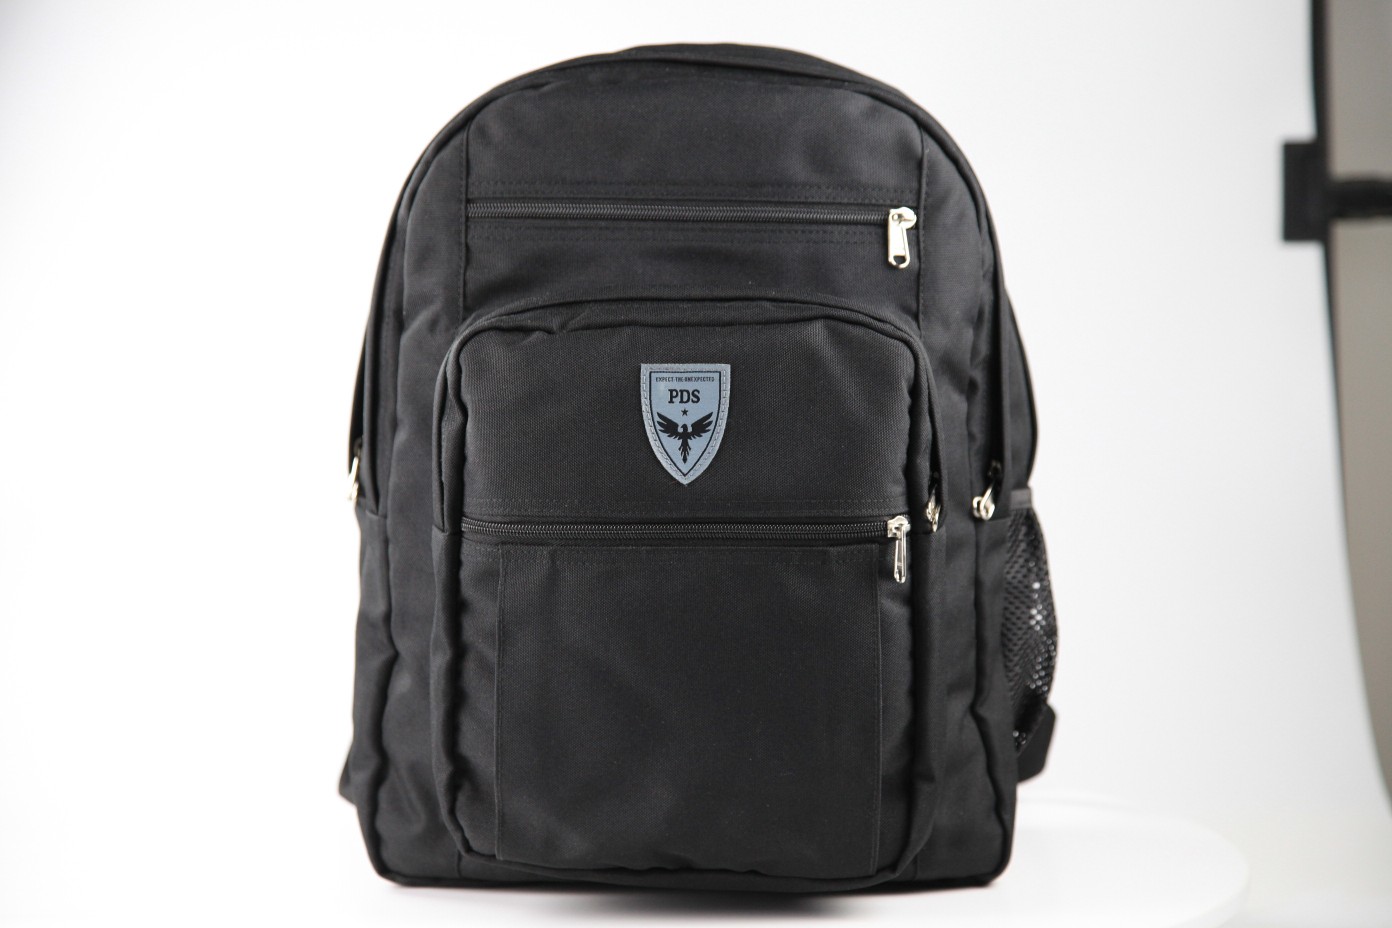 bulletproof backpack Student safety school bag Shindn UHMWPE